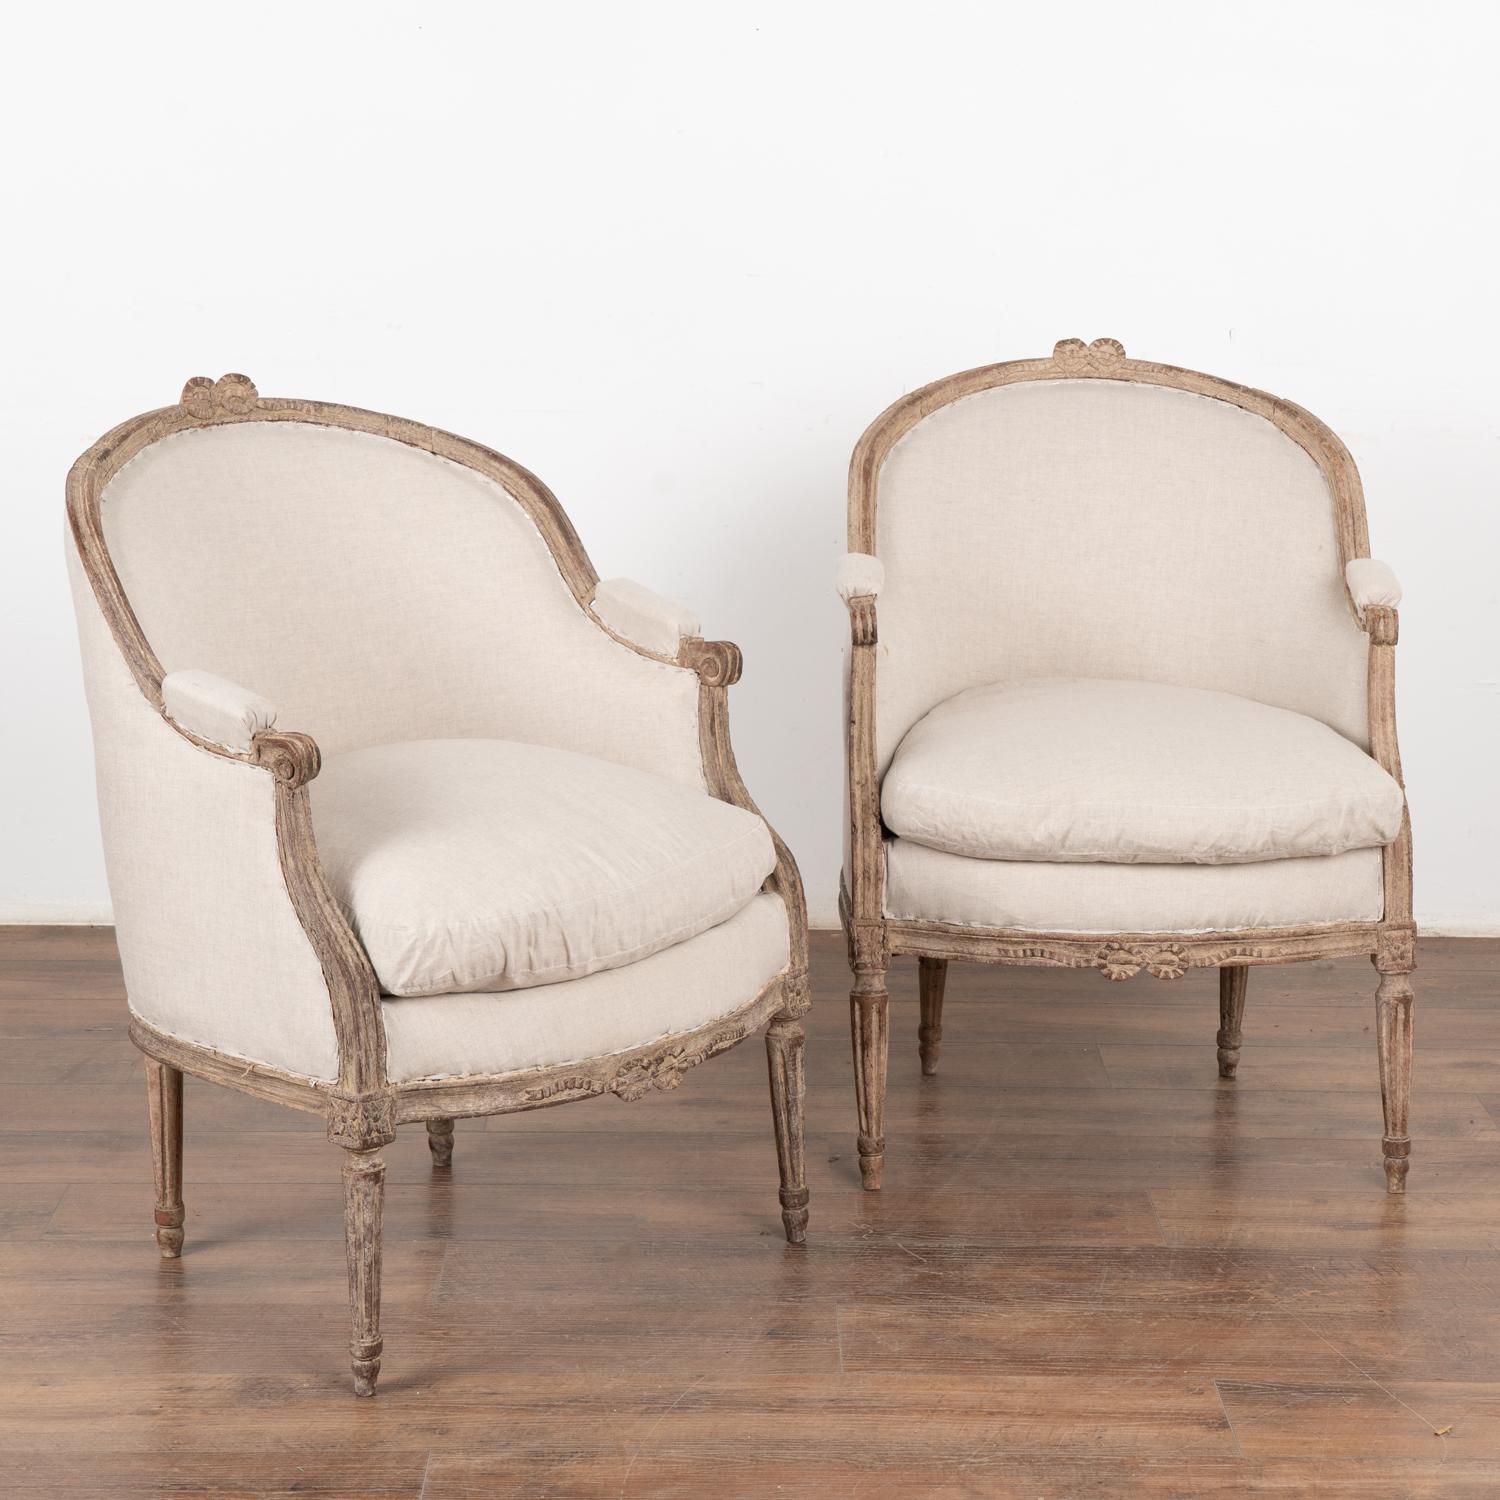 Paire de jolis fauteuils de style suédois gustavien avec dossier en tonneau légèrement incurvé et ruban/boucle sculpté ornant le dossier et la jupe. Pieds tournés et cannelés.
La nouvelle finition peinte en couches de blanc antique, appliquée par